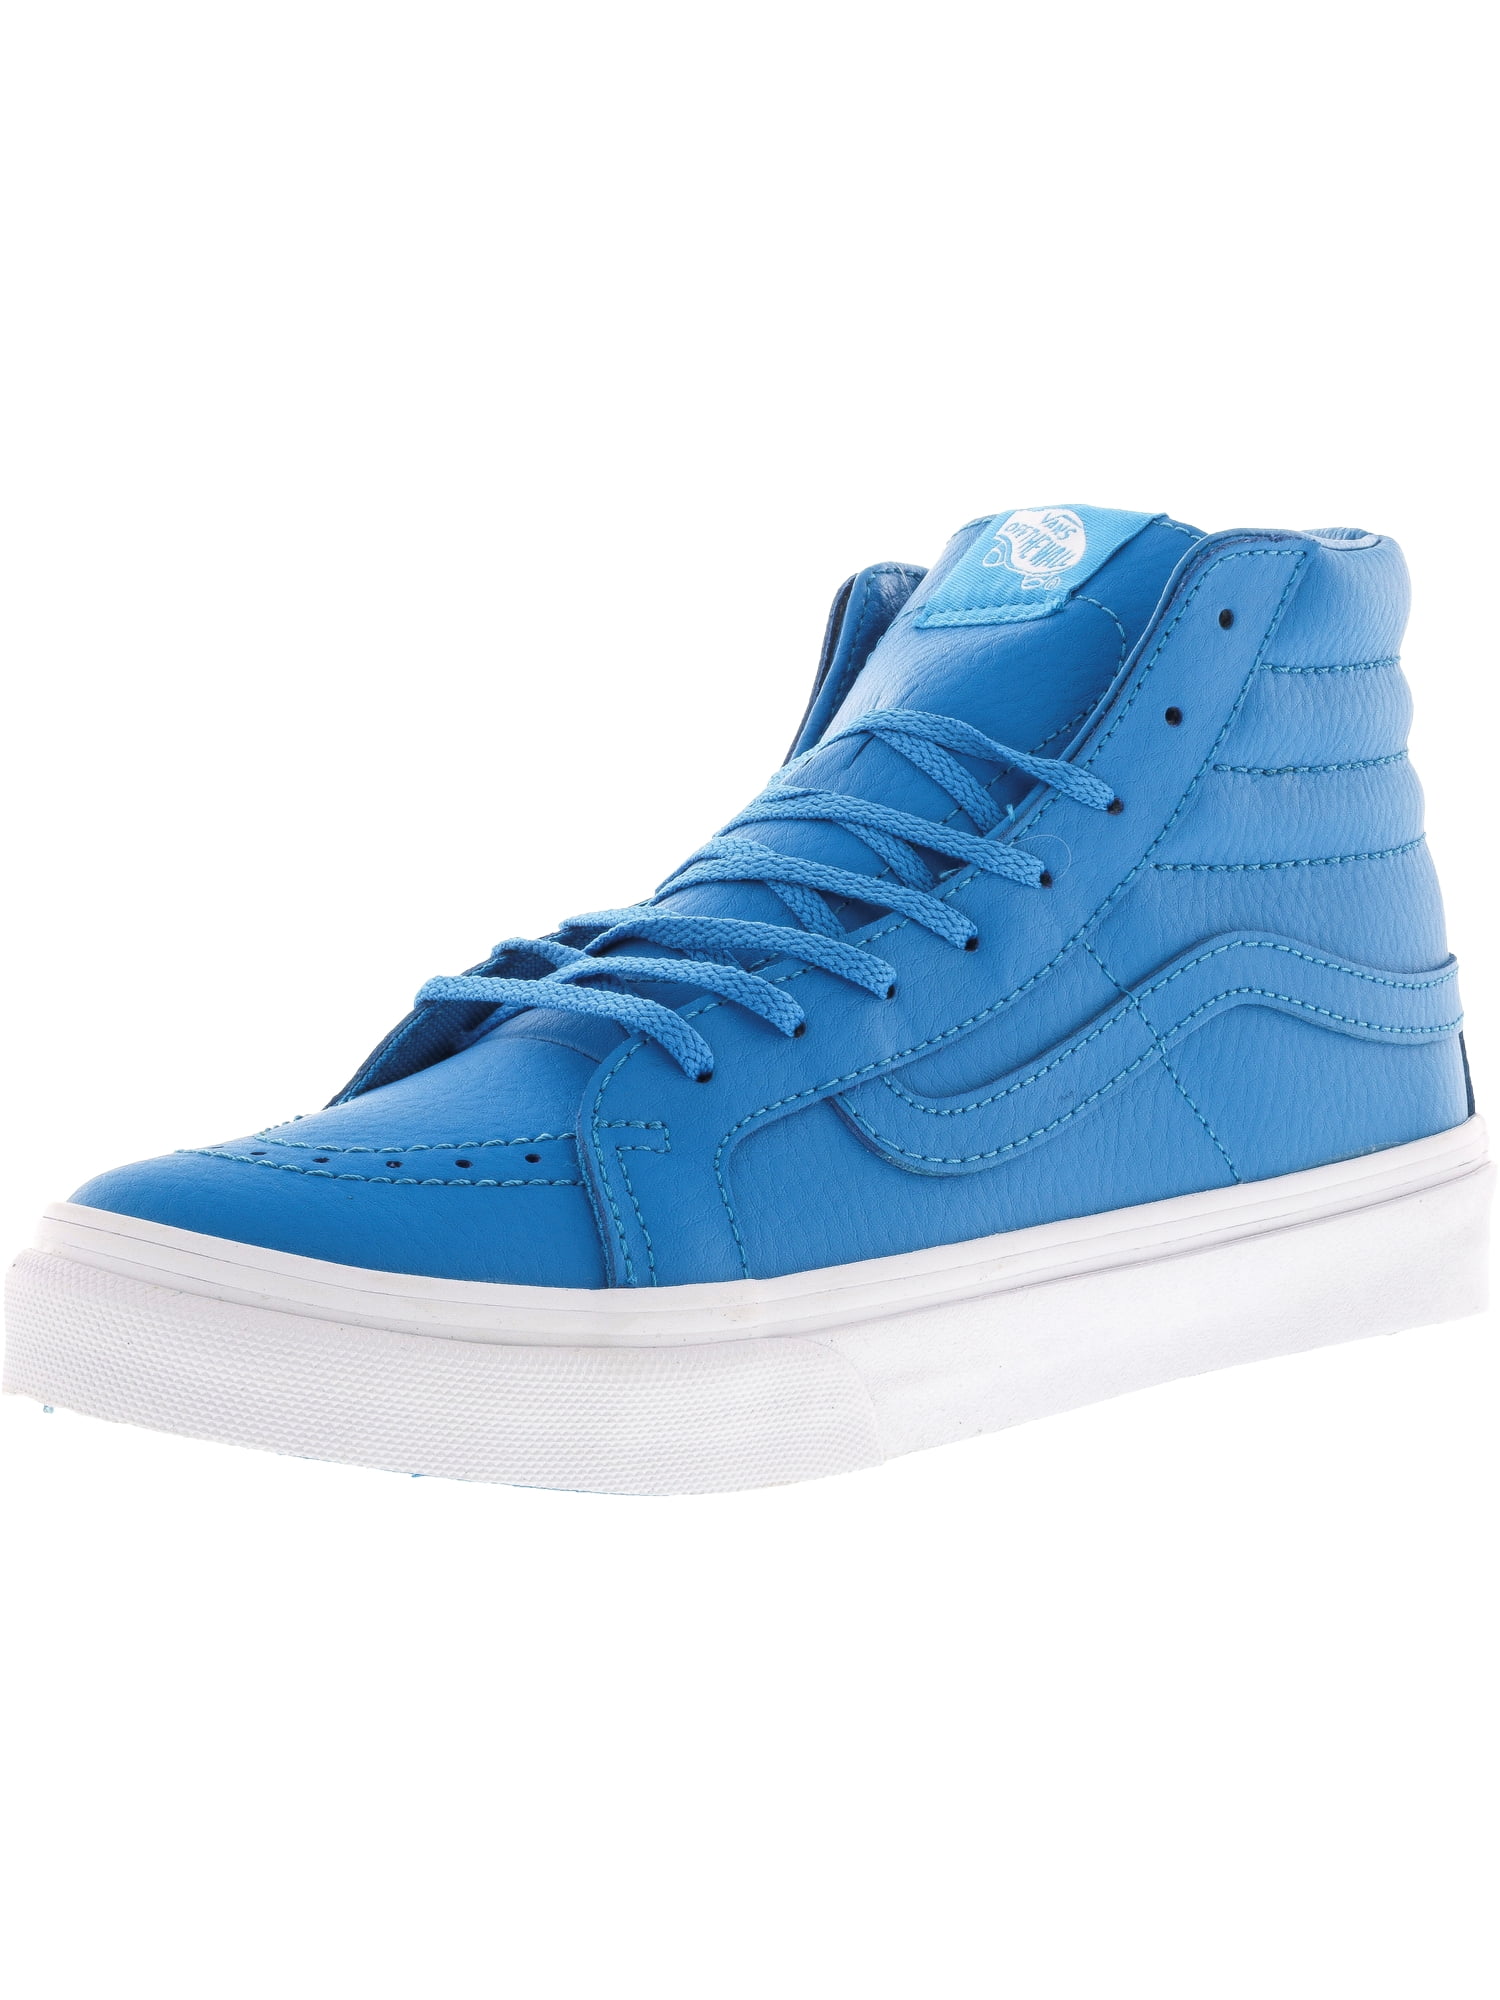 vans blue leather shoes